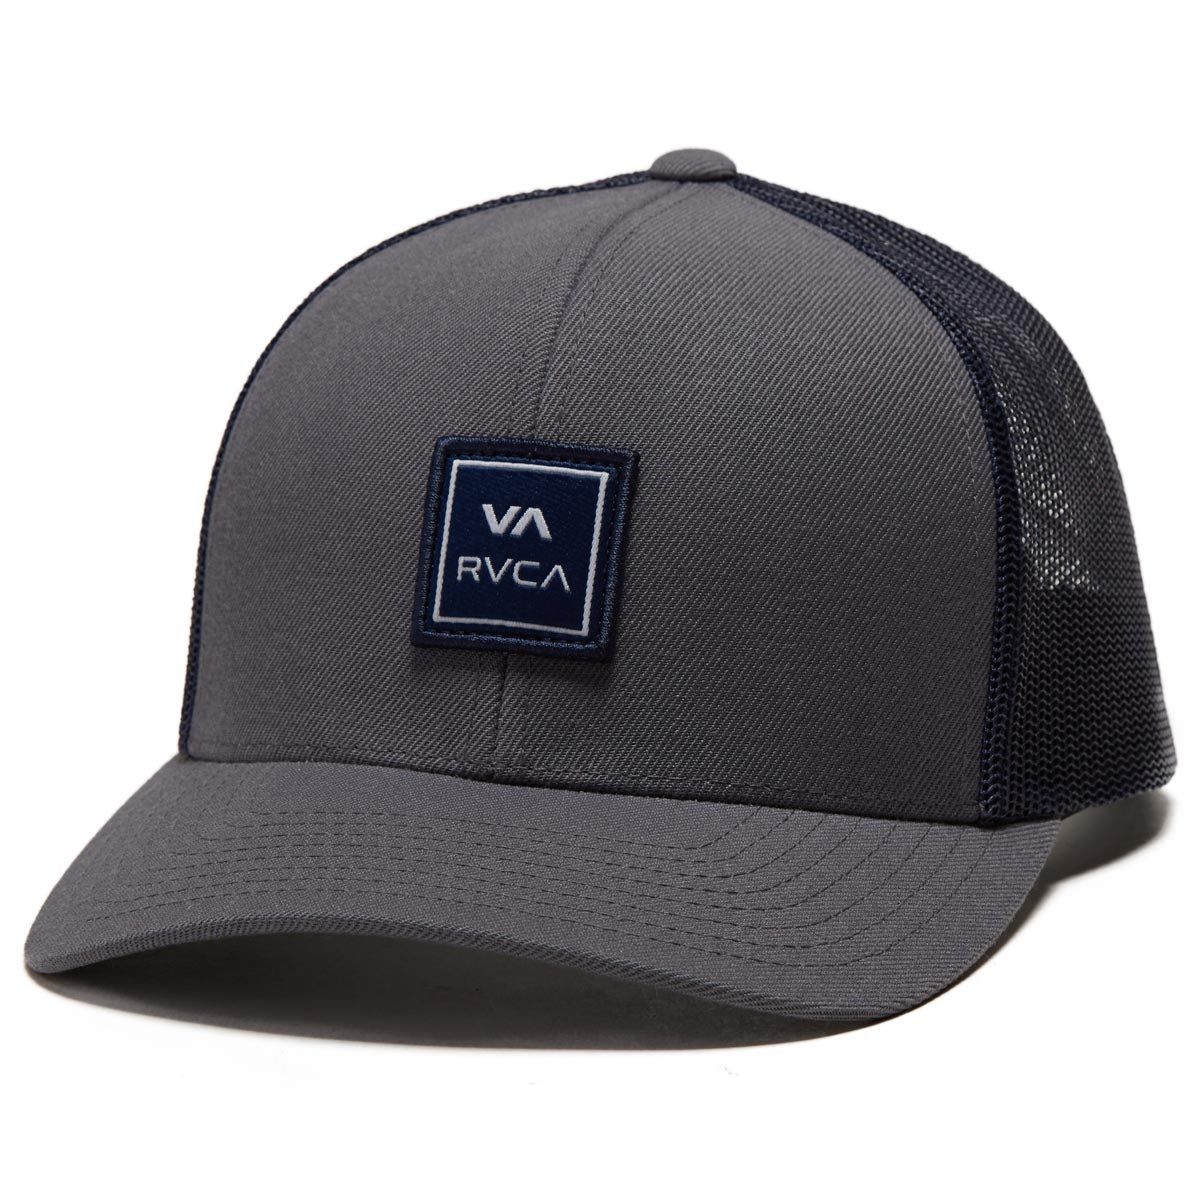 RVCA Va Station Trucker Hat - Grey/Navy image 1